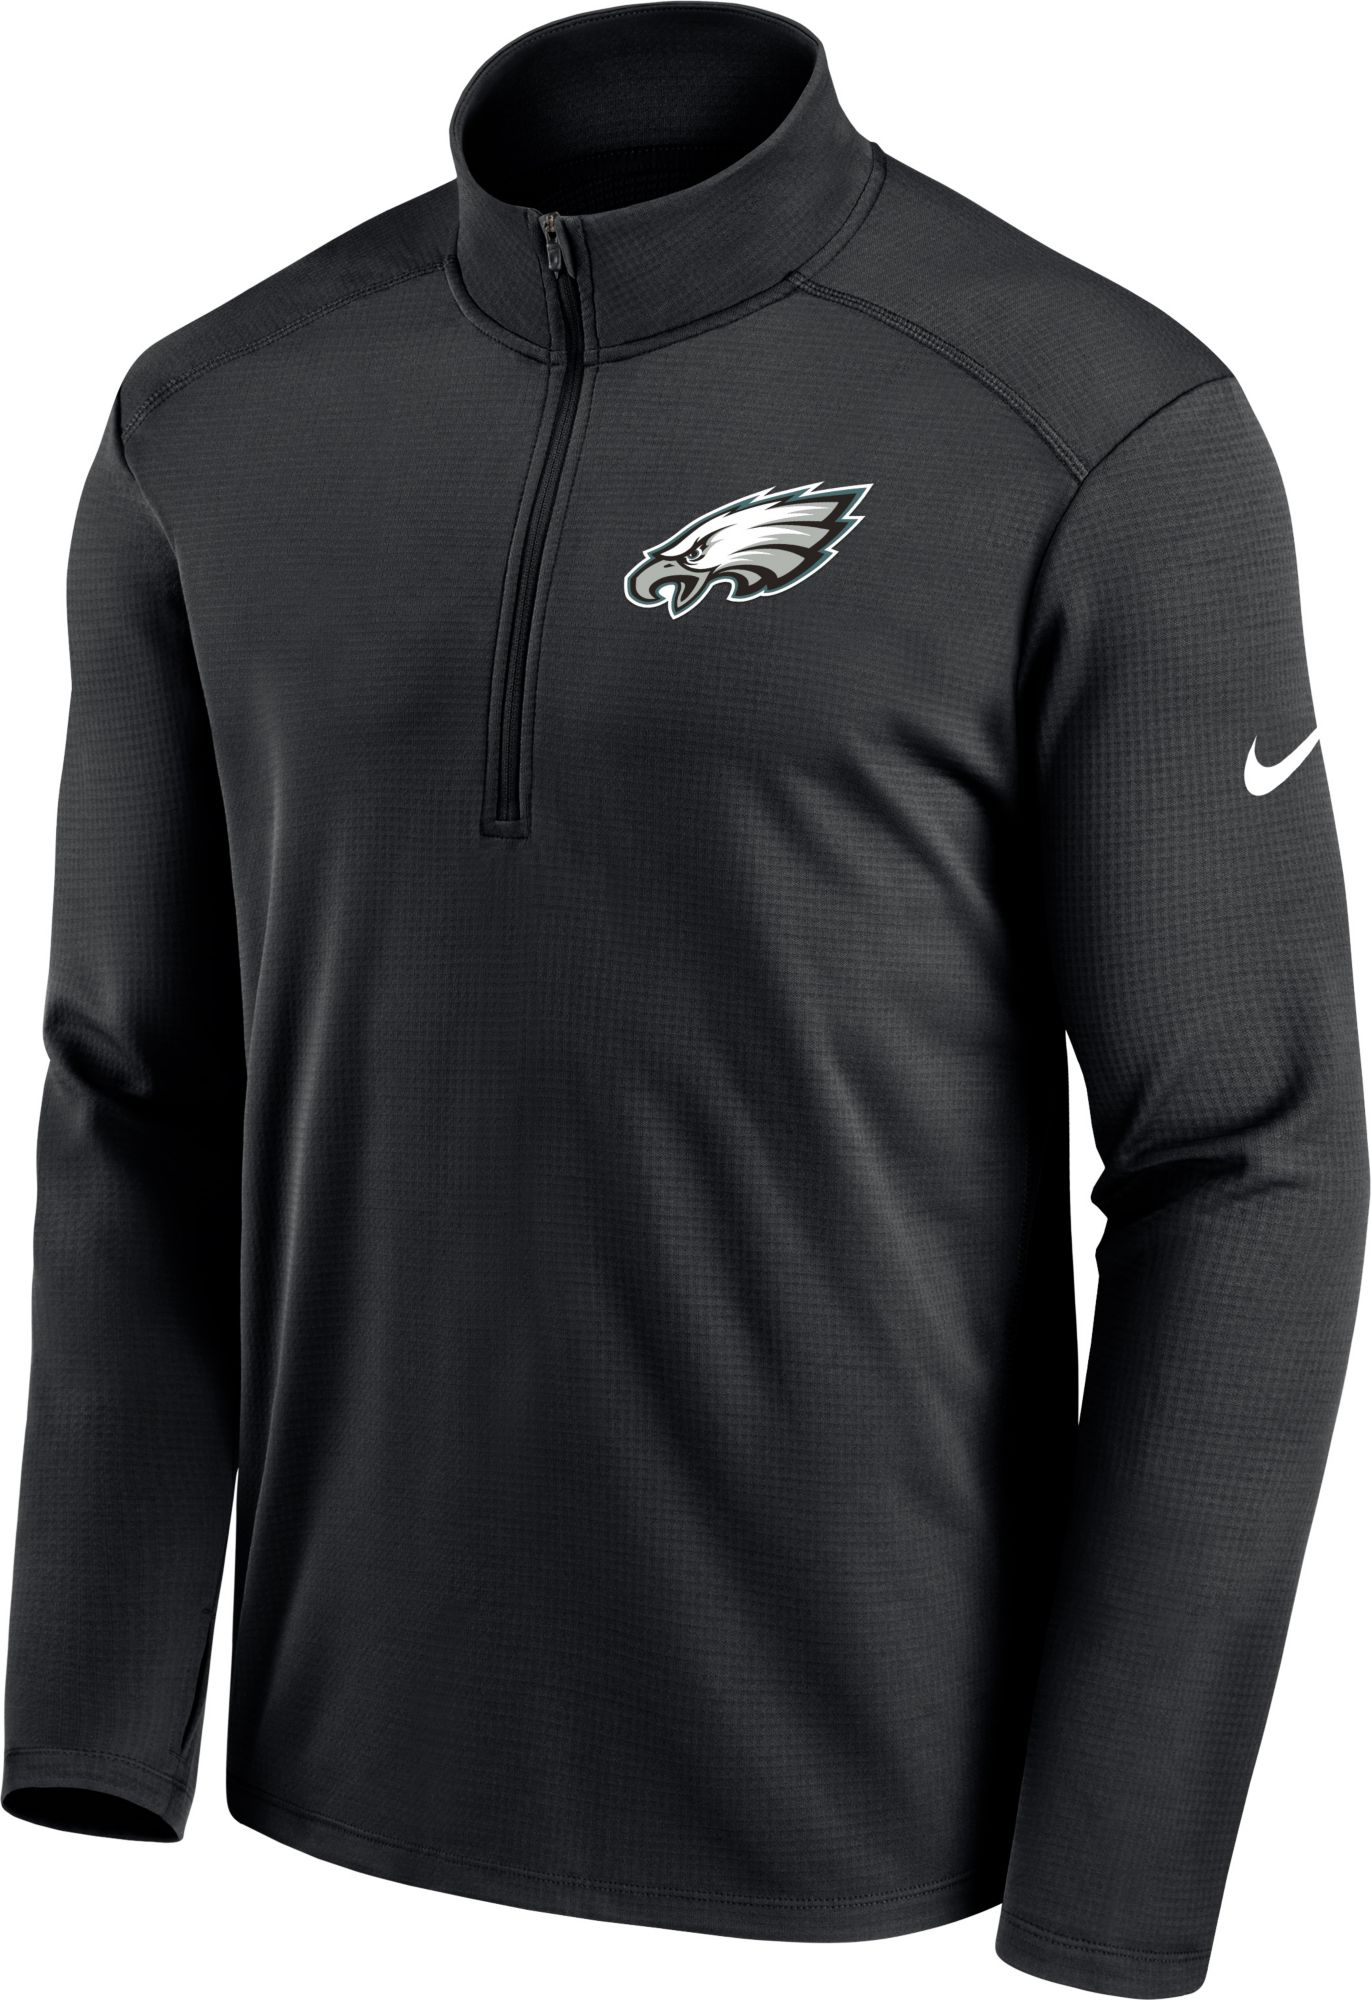 Nike Sideline Coach (NFL Philadelphia Eagles) Men's Short-Sleeve